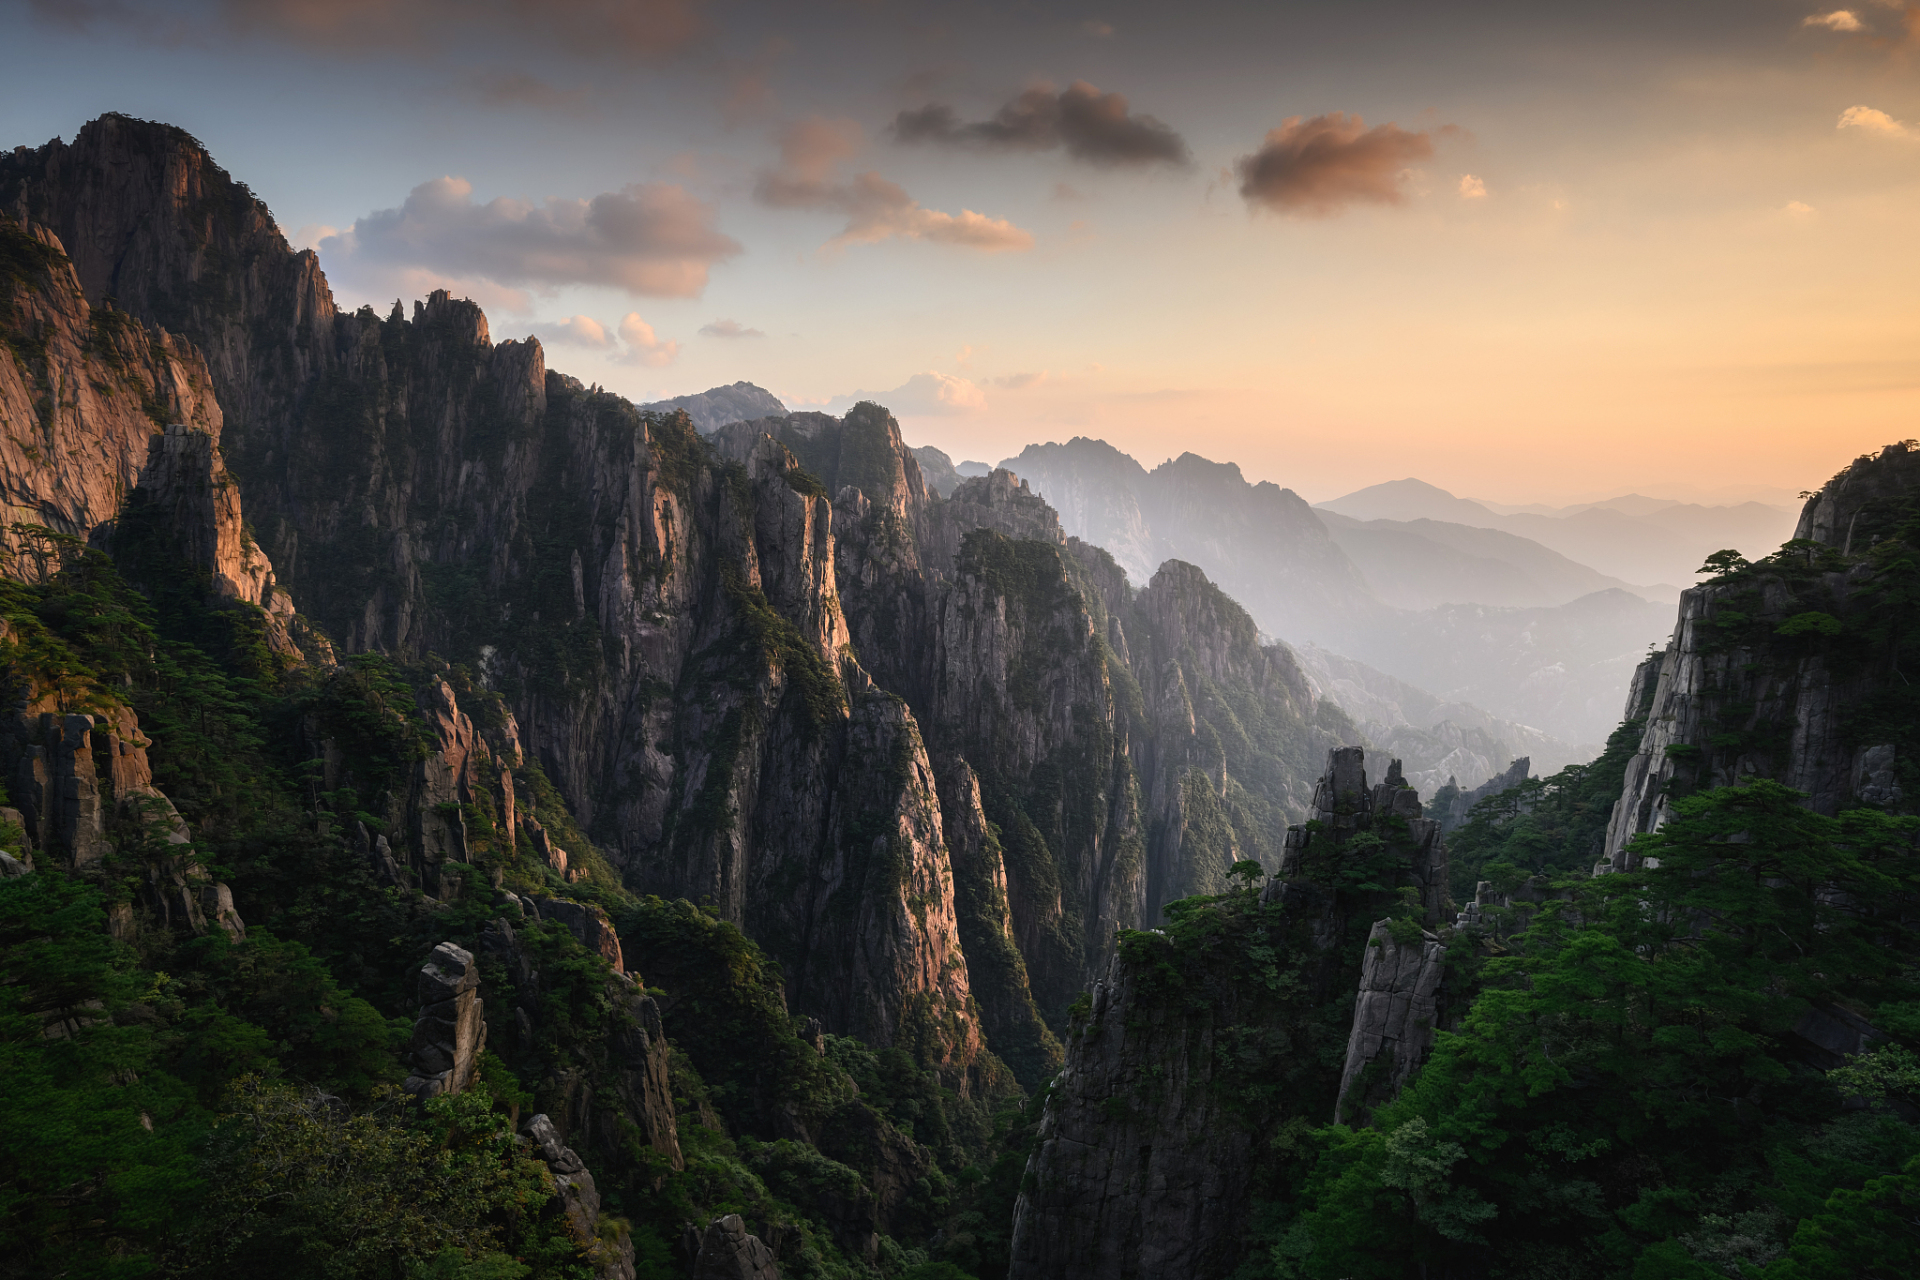 黄山:黄山位于安徽省黄山市,是中国著名的山水风景名胜区